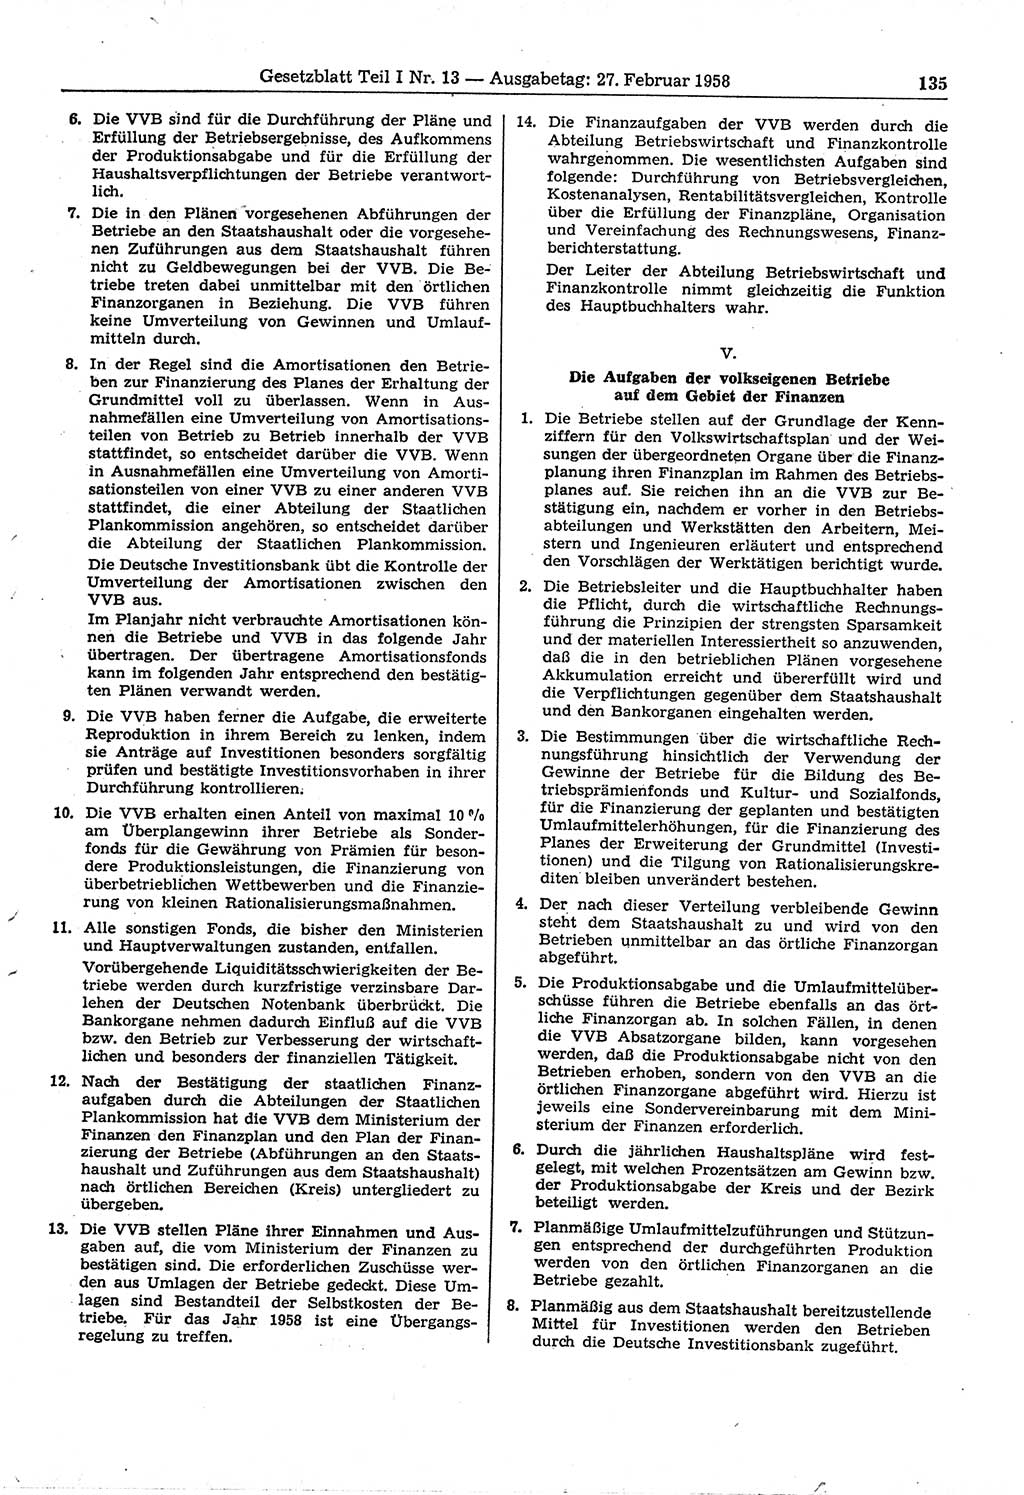 Gesetzblatt (GBl.) der Deutschen Demokratischen Republik (DDR) Teil Ⅰ 1958, Seite 135 (GBl. DDR Ⅰ 1958, S. 135)